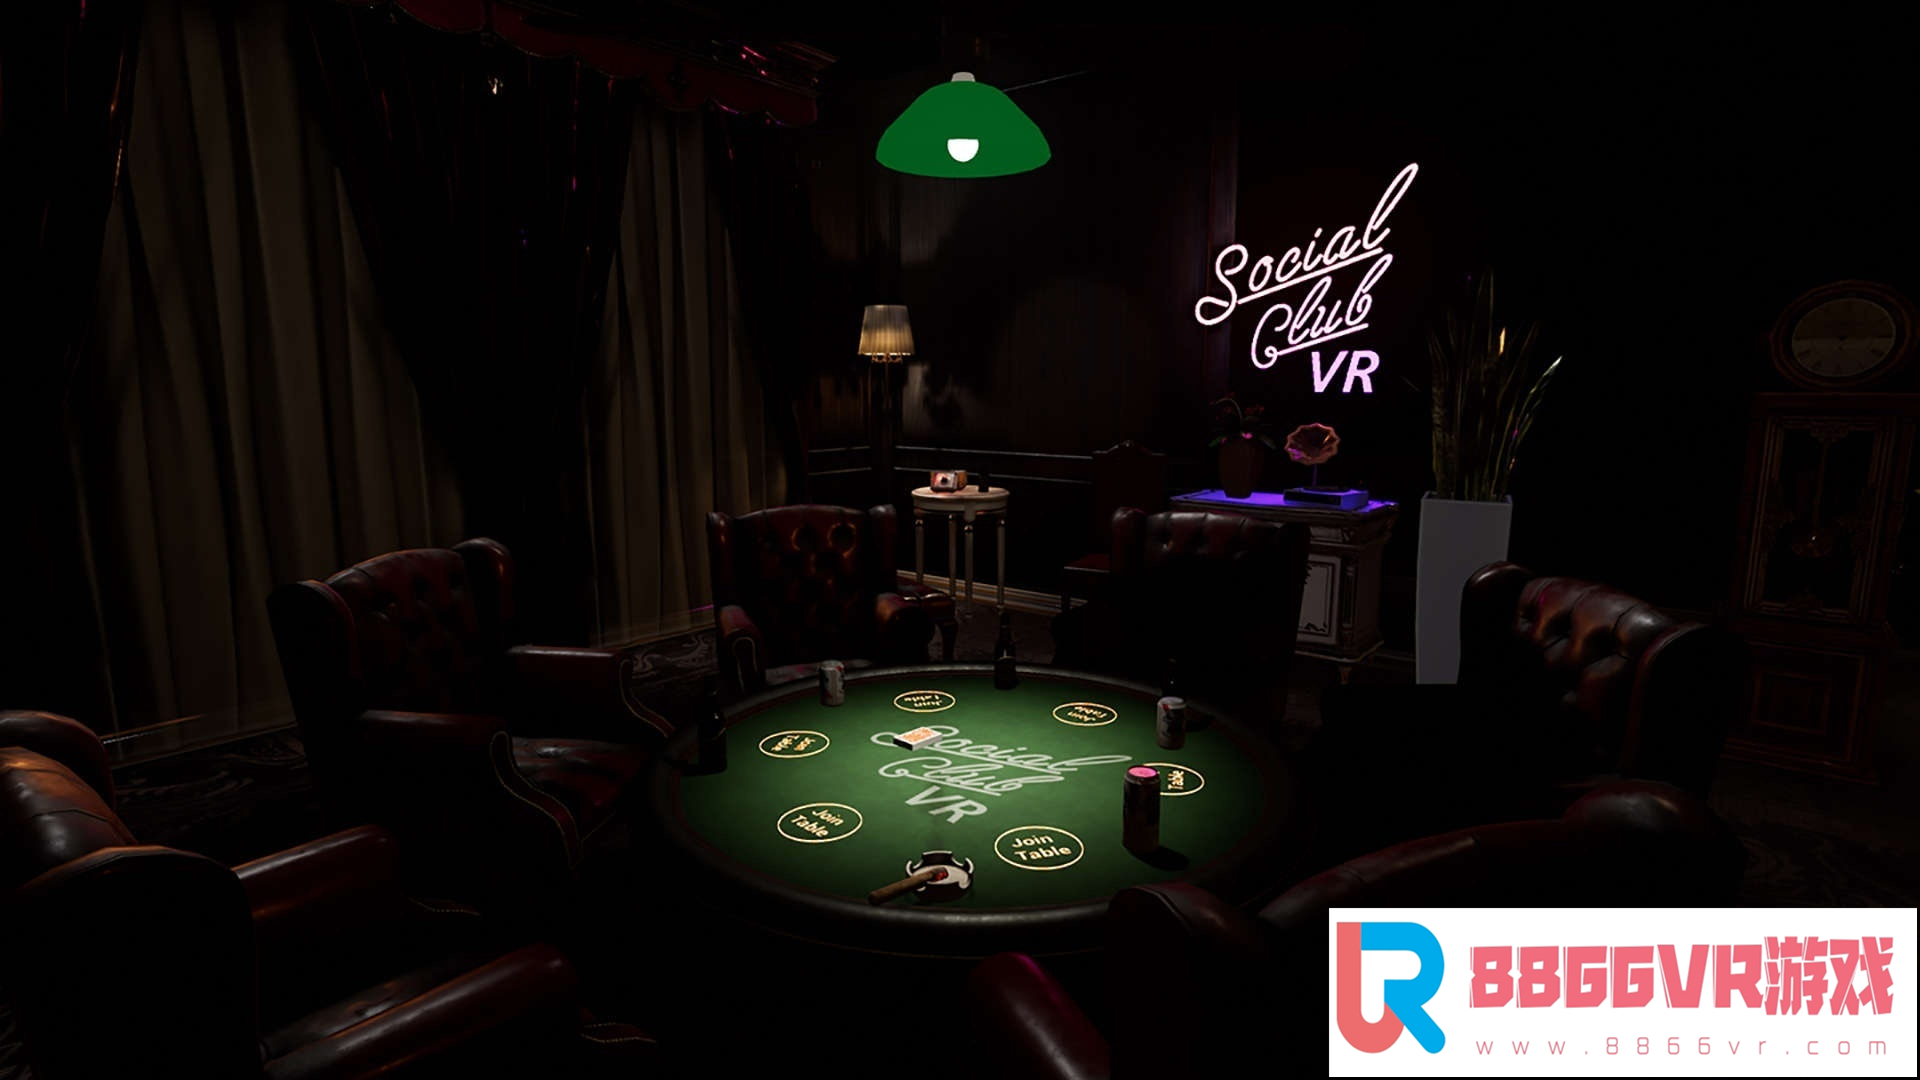 [VR交流学习] 联谊俱乐部 VR (Social Club VR : Casino Nights)479 作者:307836997 帖子ID:170 破解,联谊,俱乐部,social,club